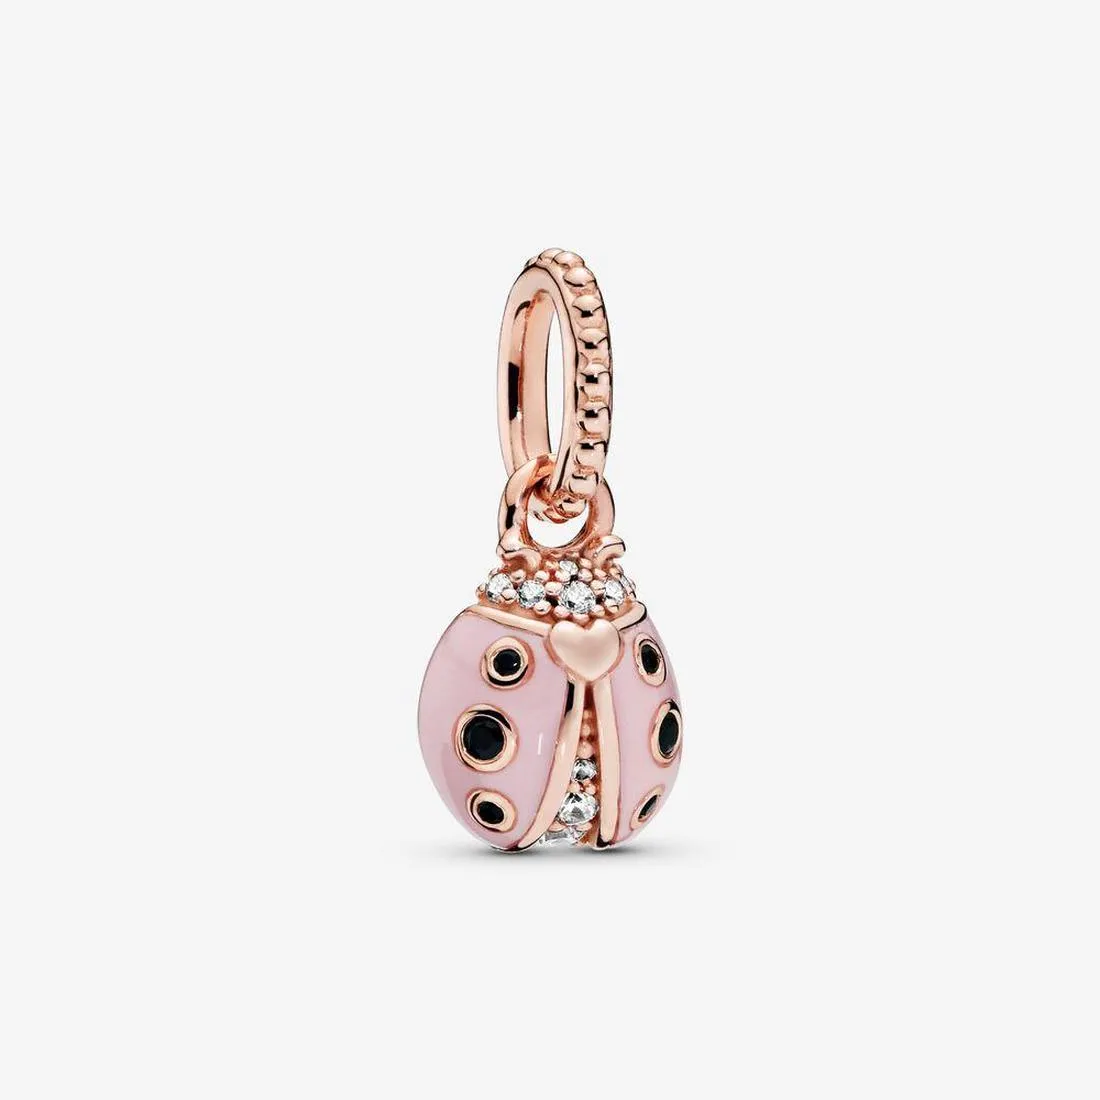 Echte neue Ankunft 100 % 925 Sterling Silber rosa Marienkäfer Anhänger Modeschmuck machen für Pandora Frauen Geschenke